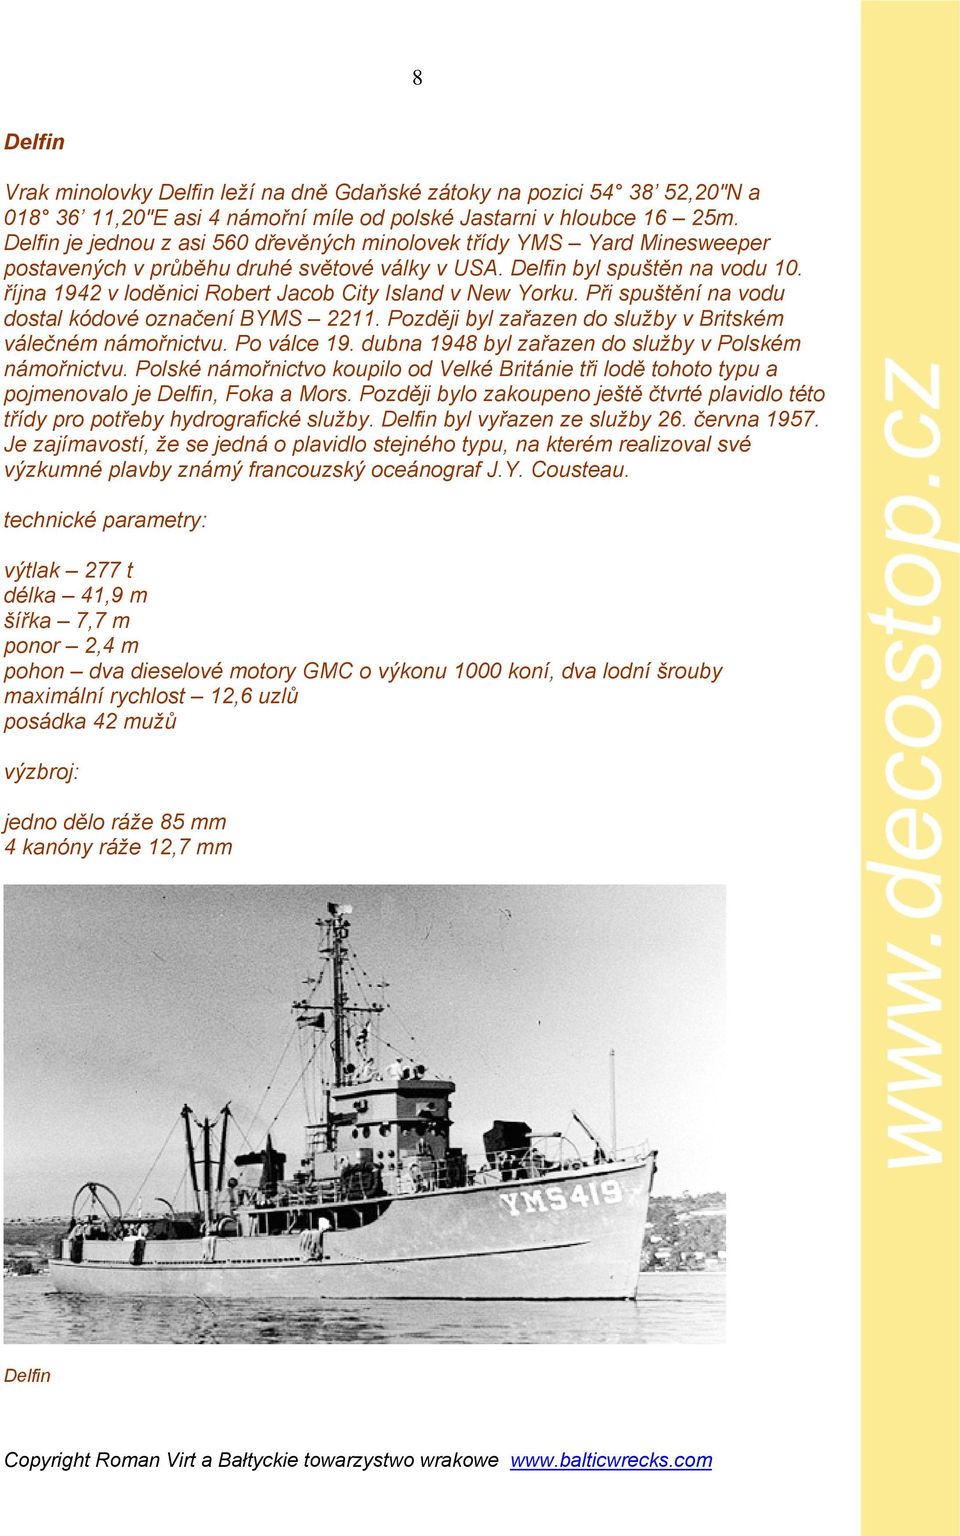 října 1942 v loděnici Robert Jacob City Island v New Yorku. Při spuštění na vodu dostal kódové označení BYMS 2211. Později byl zařazen do služby v Britském válečném námořnictvu. Po válce 19.